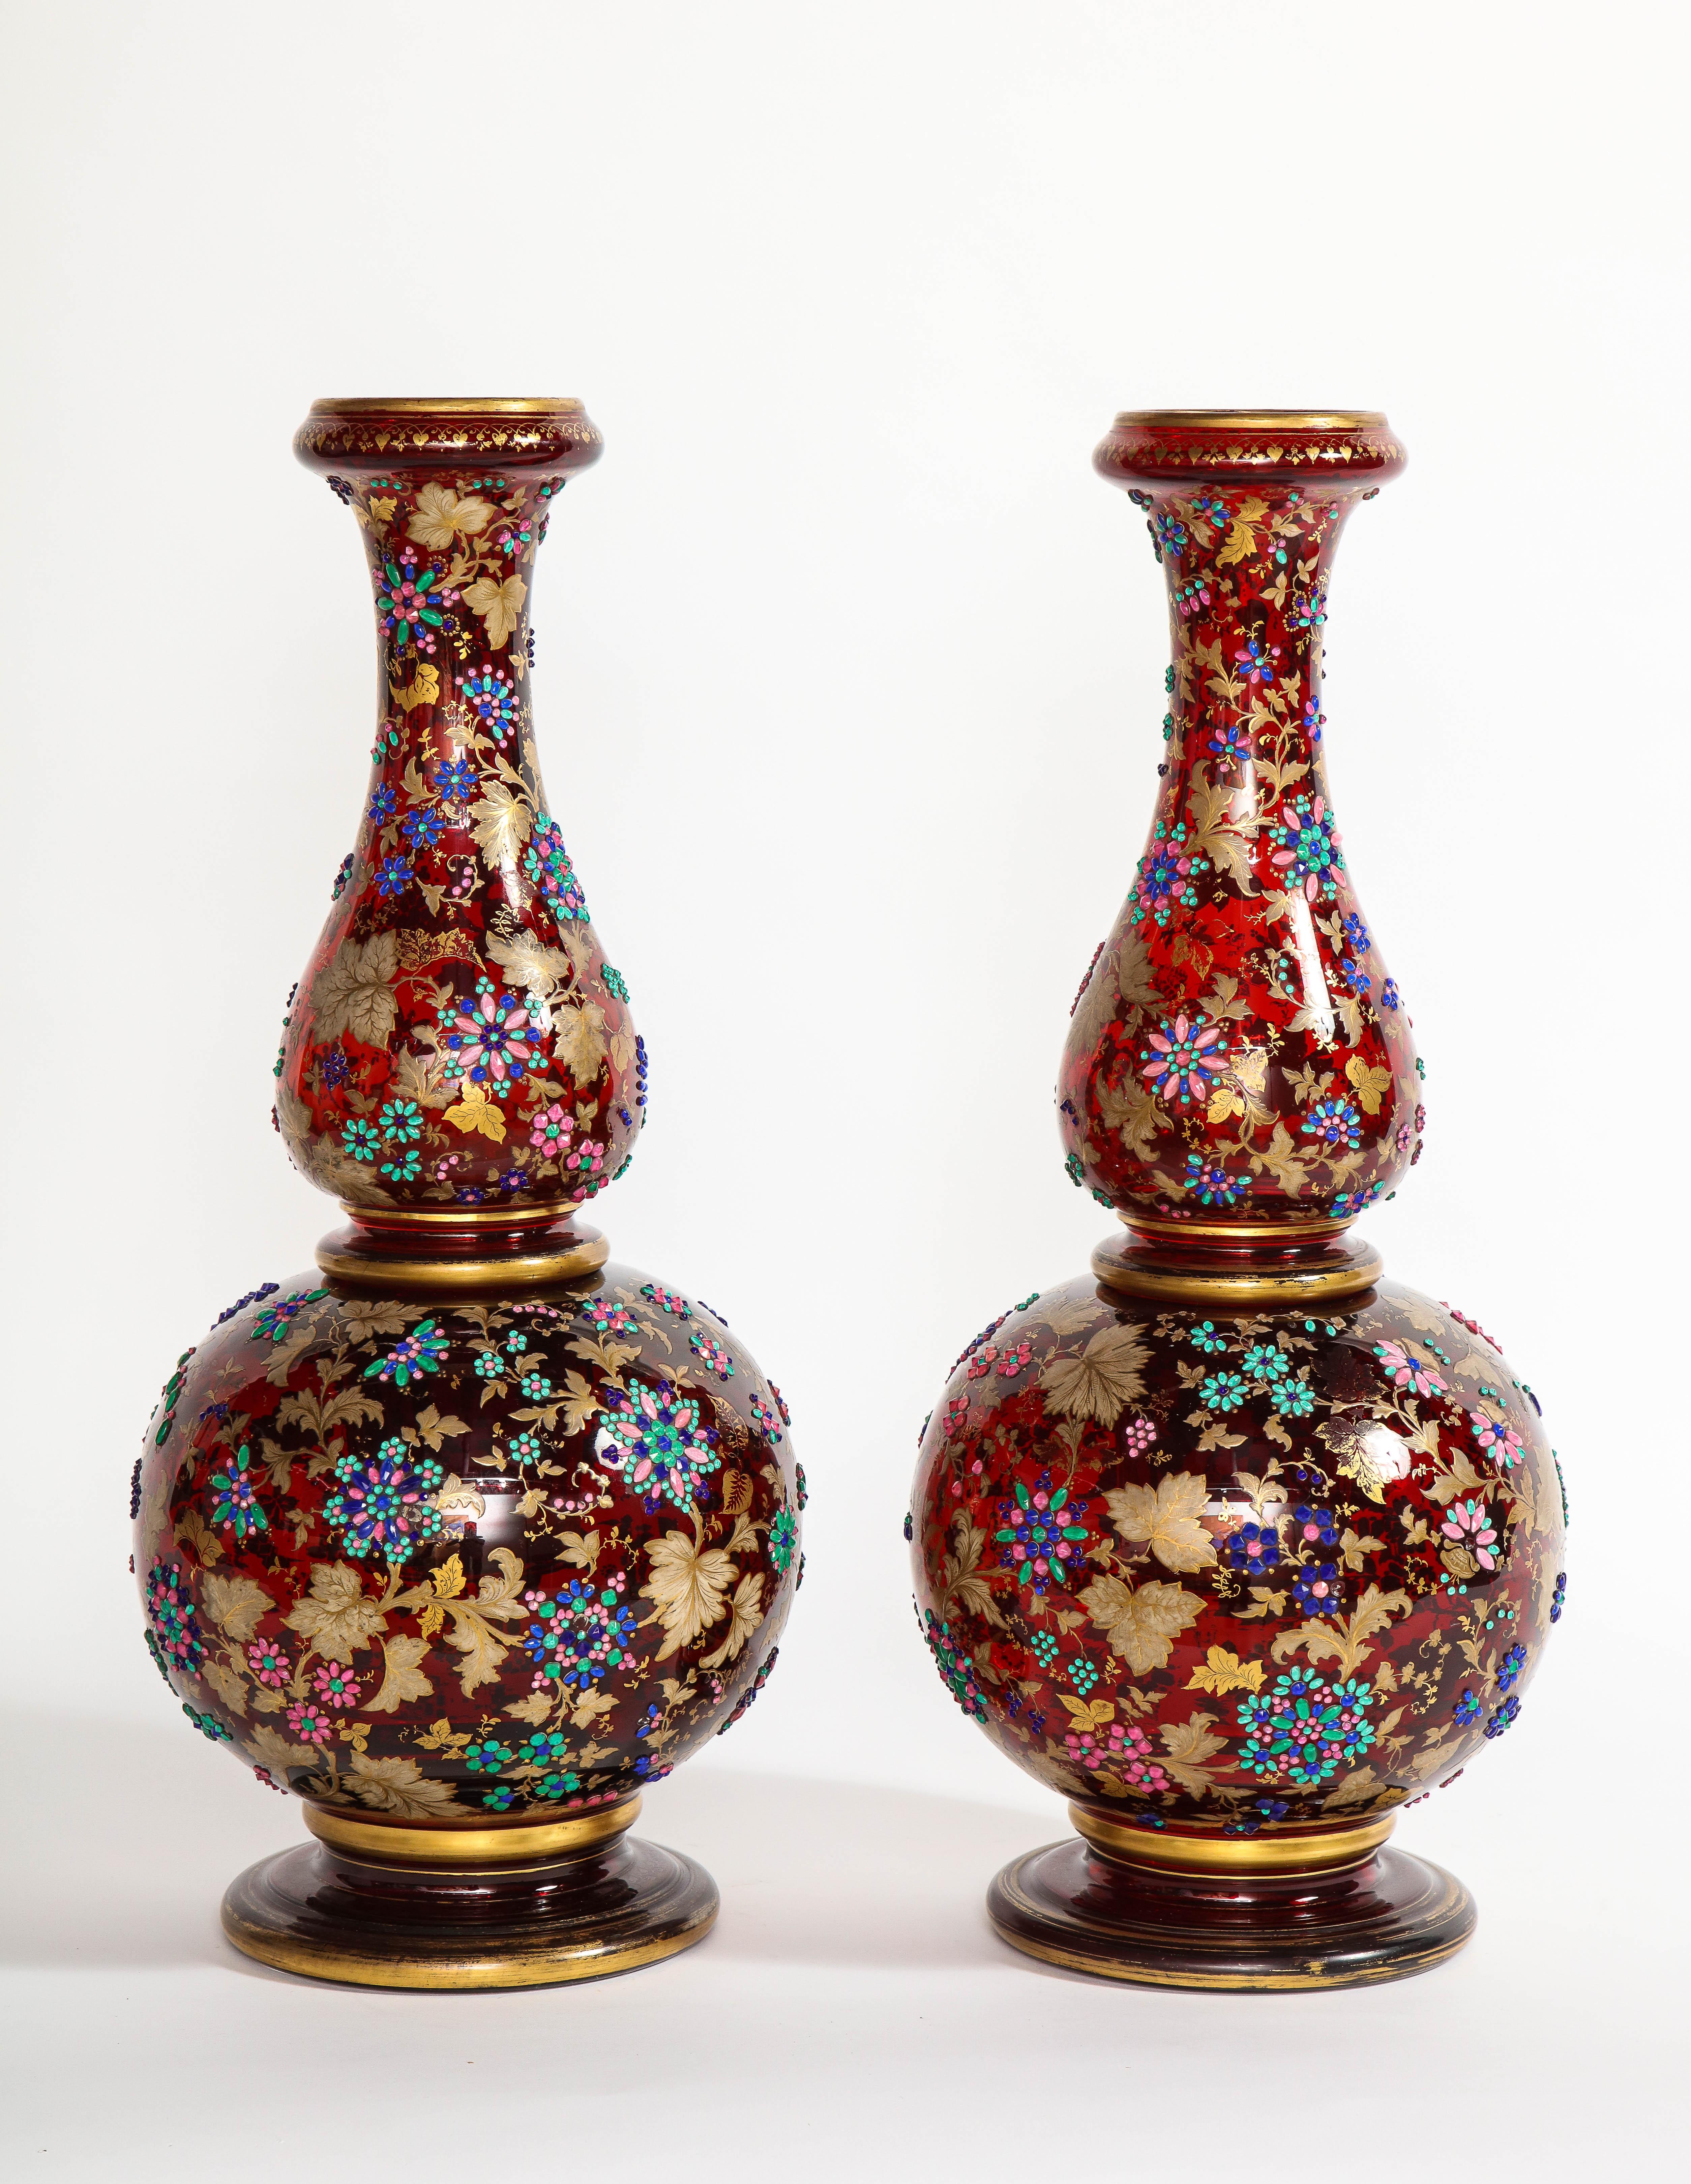 Ein monumentales Paar antiker Moser-Vasen aus dem 19. Jahrhundert mit rubinrotem Überfang und 24-karätigem, zweifarbigem, brüniertem und mattem Gold. Jede dieser Vasen ist in fabelhafter Handarbeit mit exquisiten Details gefertigt. Fein applizierte